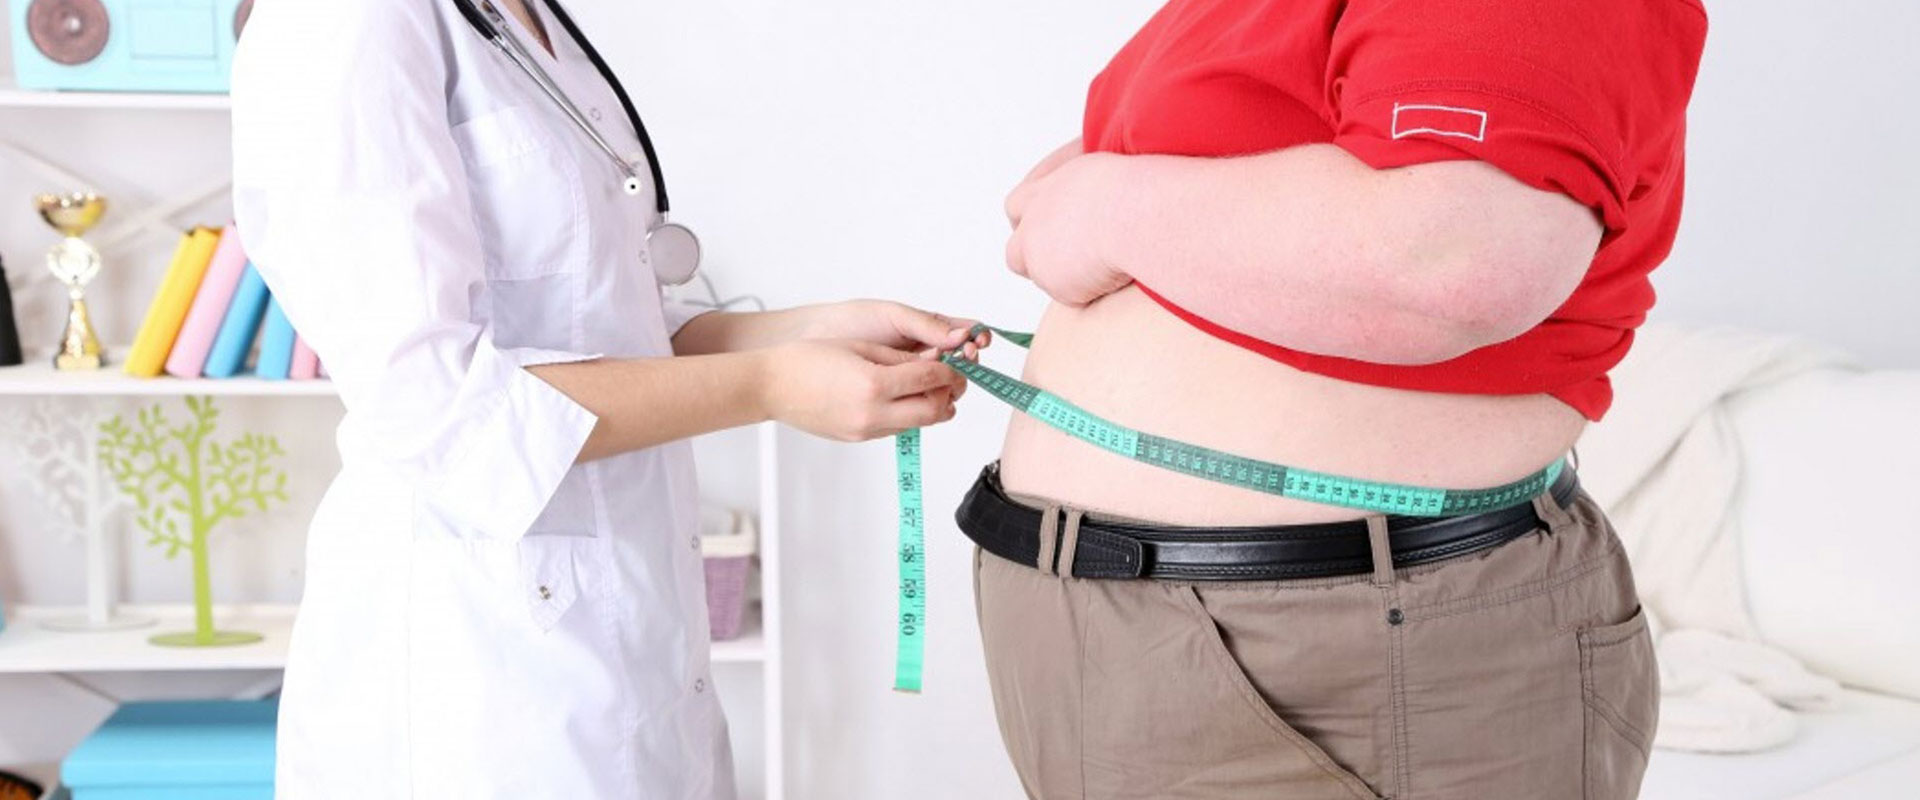 Fettleibigkeitschirurgie